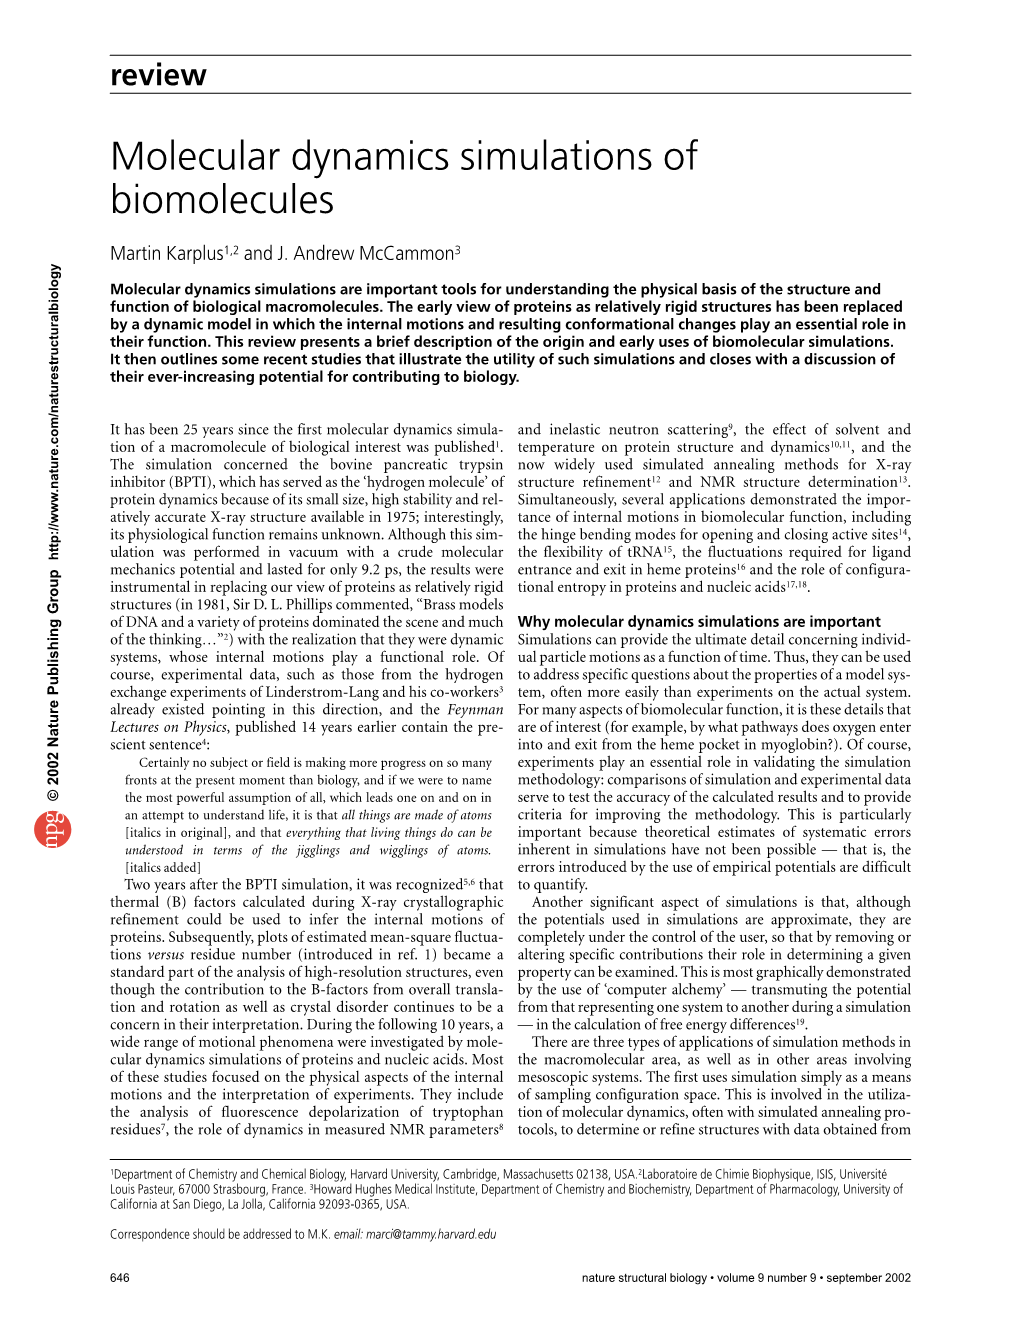 Molecular Dynamics Simulations of Biomolecules